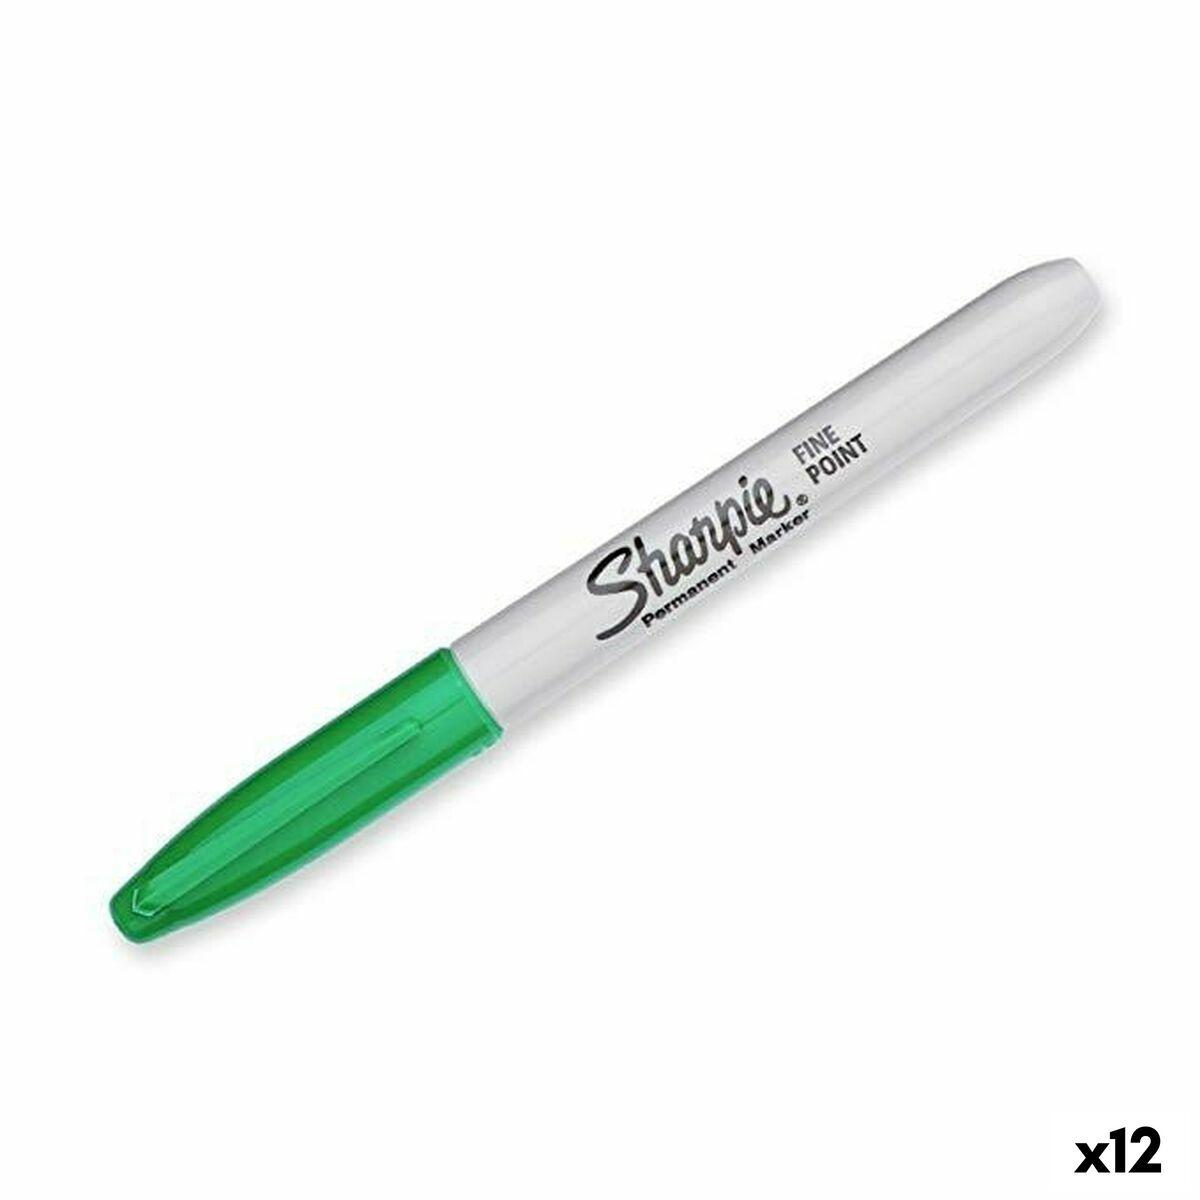 Sprittusch Sharpie Fine Point Grøn (12 enheder)